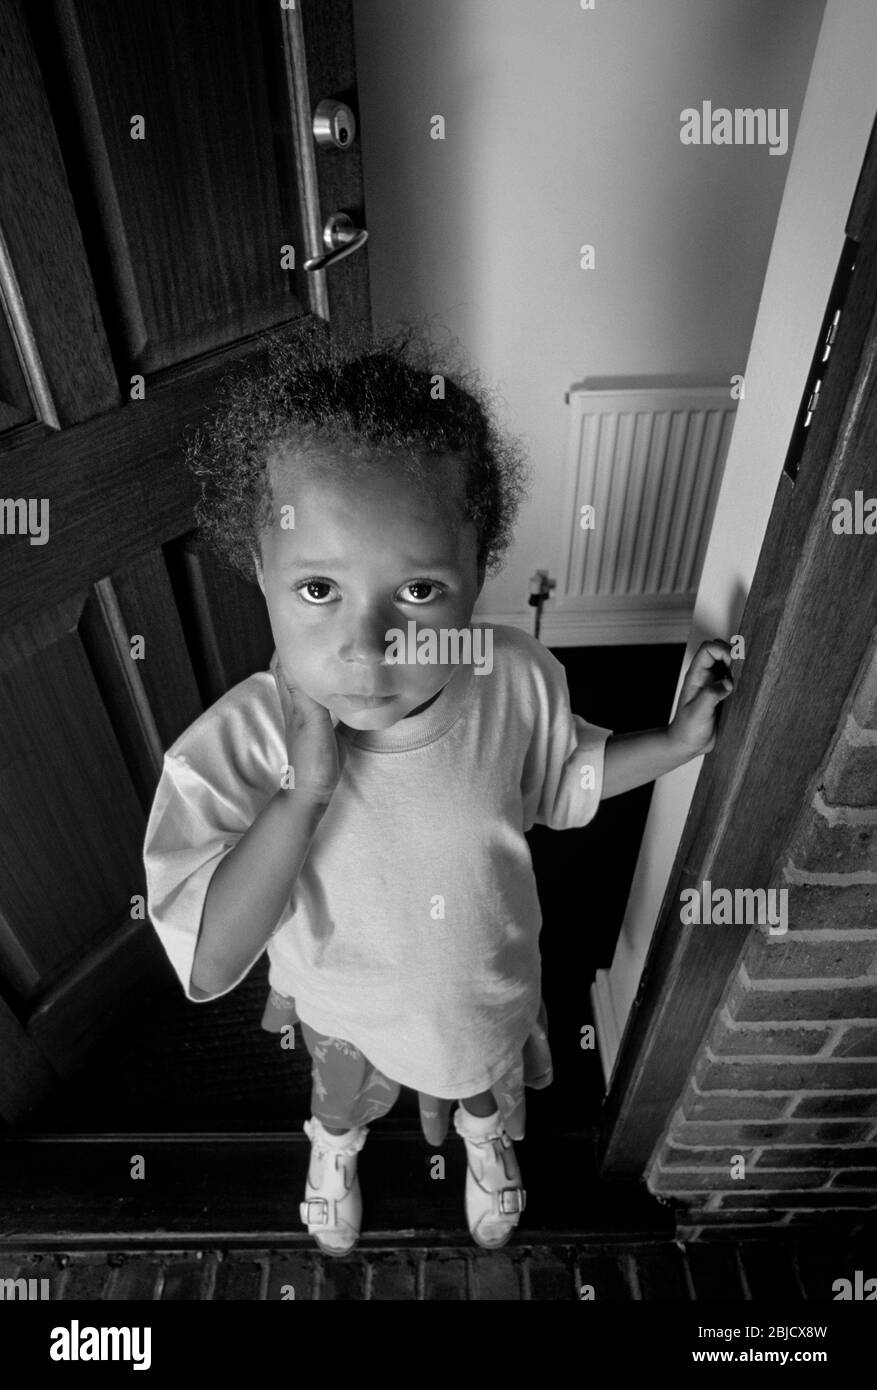 Bébé fille porte ouverte maison 3-5 ans mignon attrayant joli, se tient à l'entrée de porte ouverte de sa maison avec innocent triste pensive expression attrayante B & W. Banque D'Images